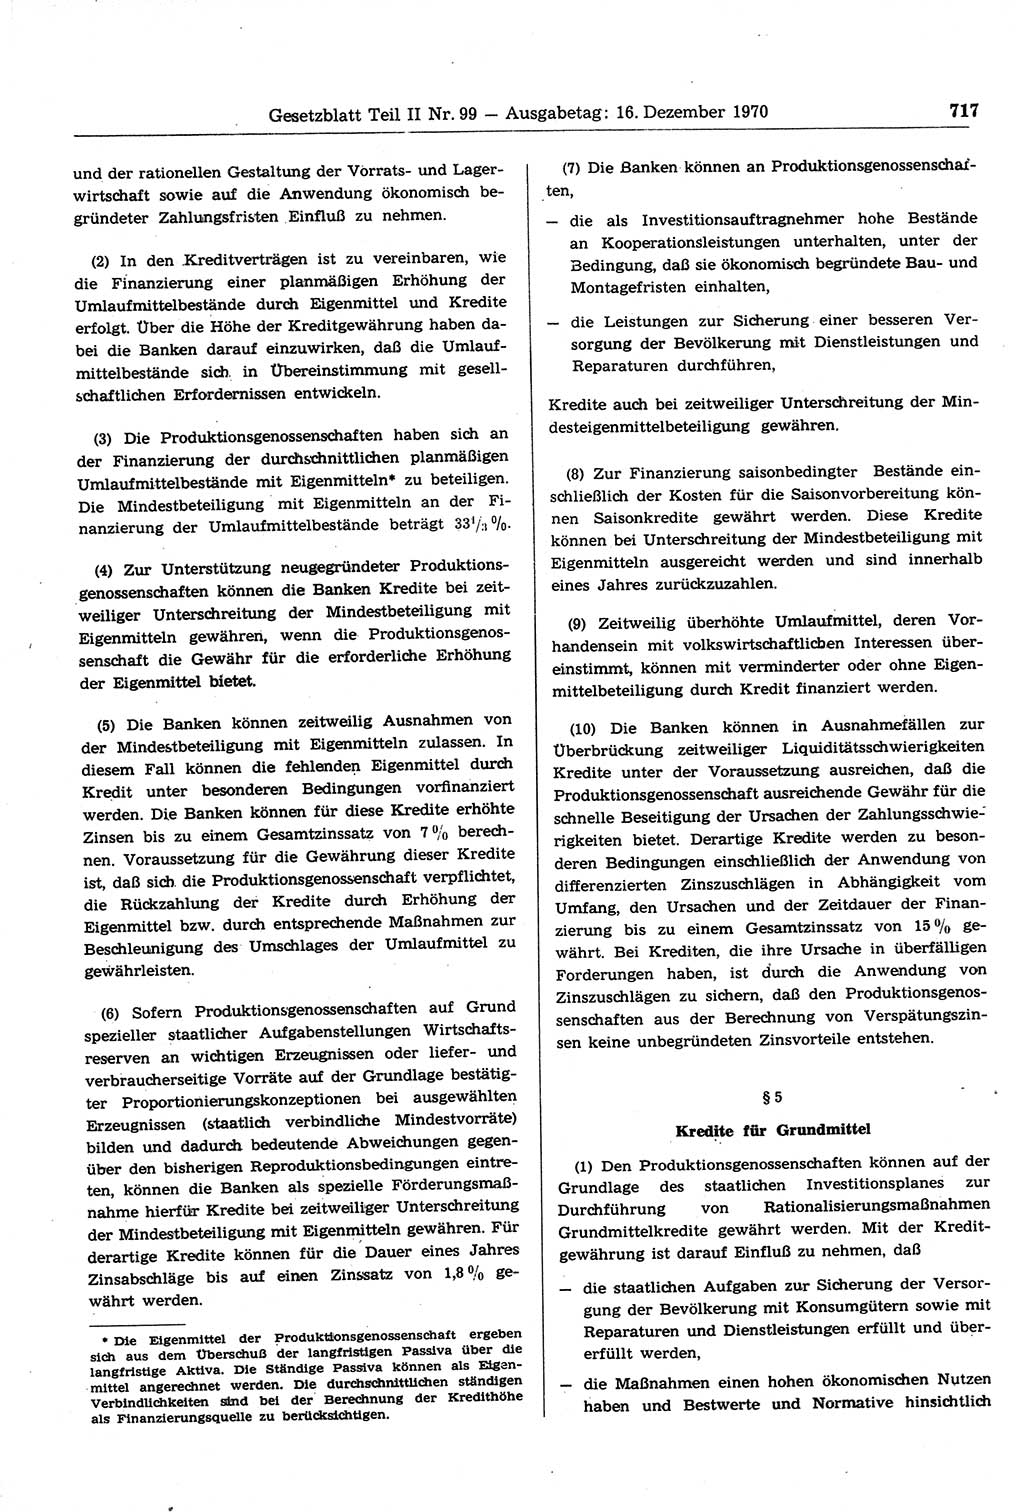 Gesetzblatt (GBl.) der Deutschen Demokratischen Republik (DDR) Teil ⅠⅠ 1970, Seite 717 (GBl. DDR ⅠⅠ 1970, S. 717)